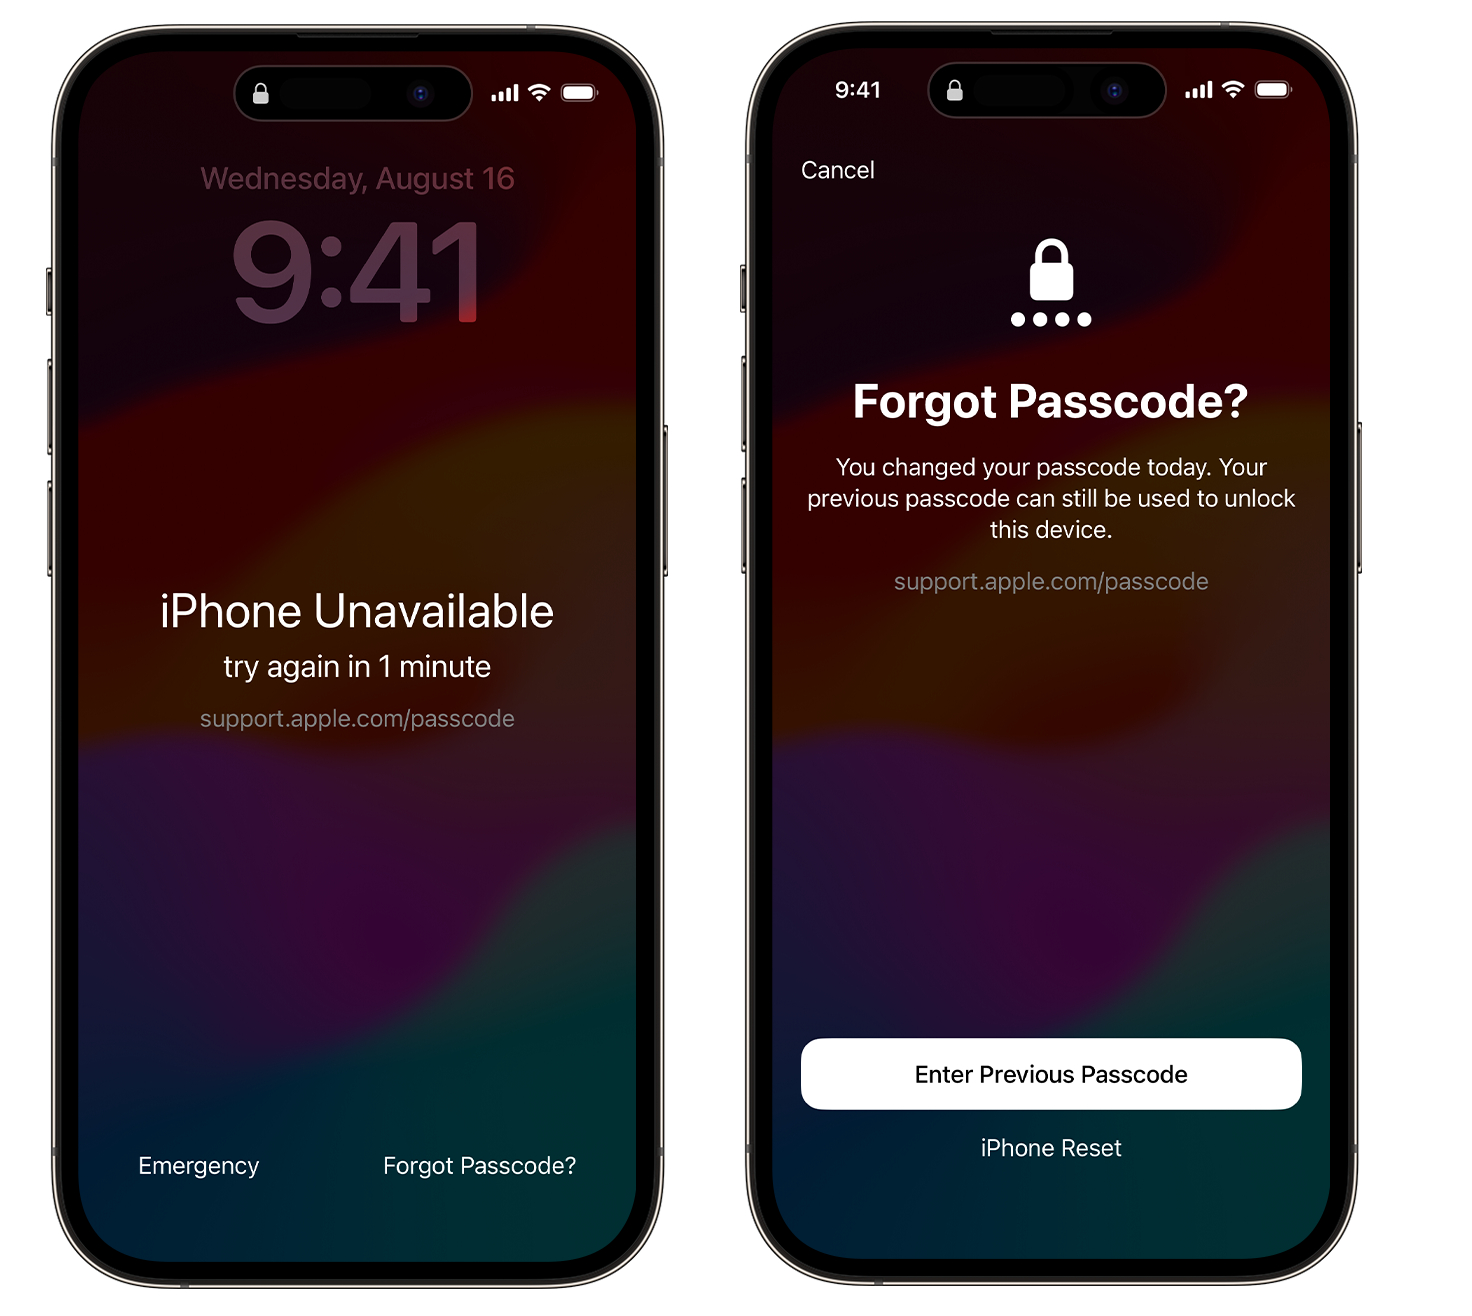 iphone忘記螢幕密碼怎麼辦，3種免電腦解鎖方法! - iPhone忘記密碼 iPhone - 敗家達人推薦